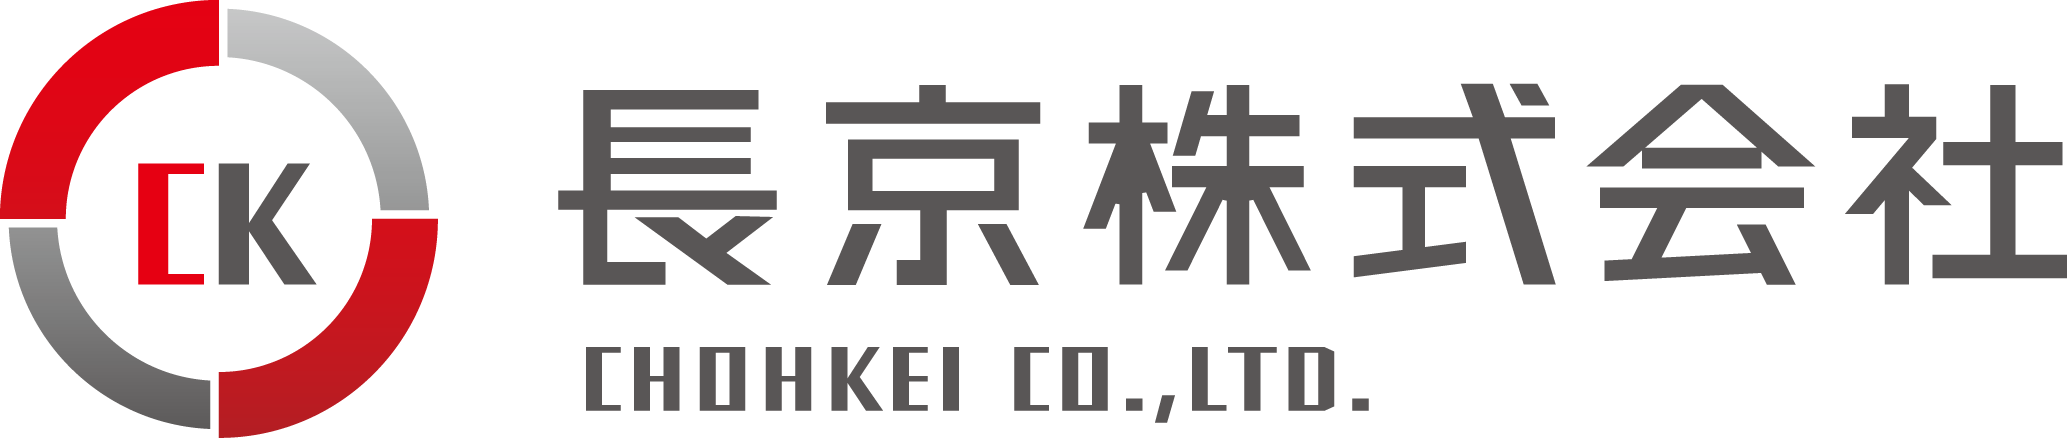 長崎市の製造業を応援する専門商社 長京株式会社